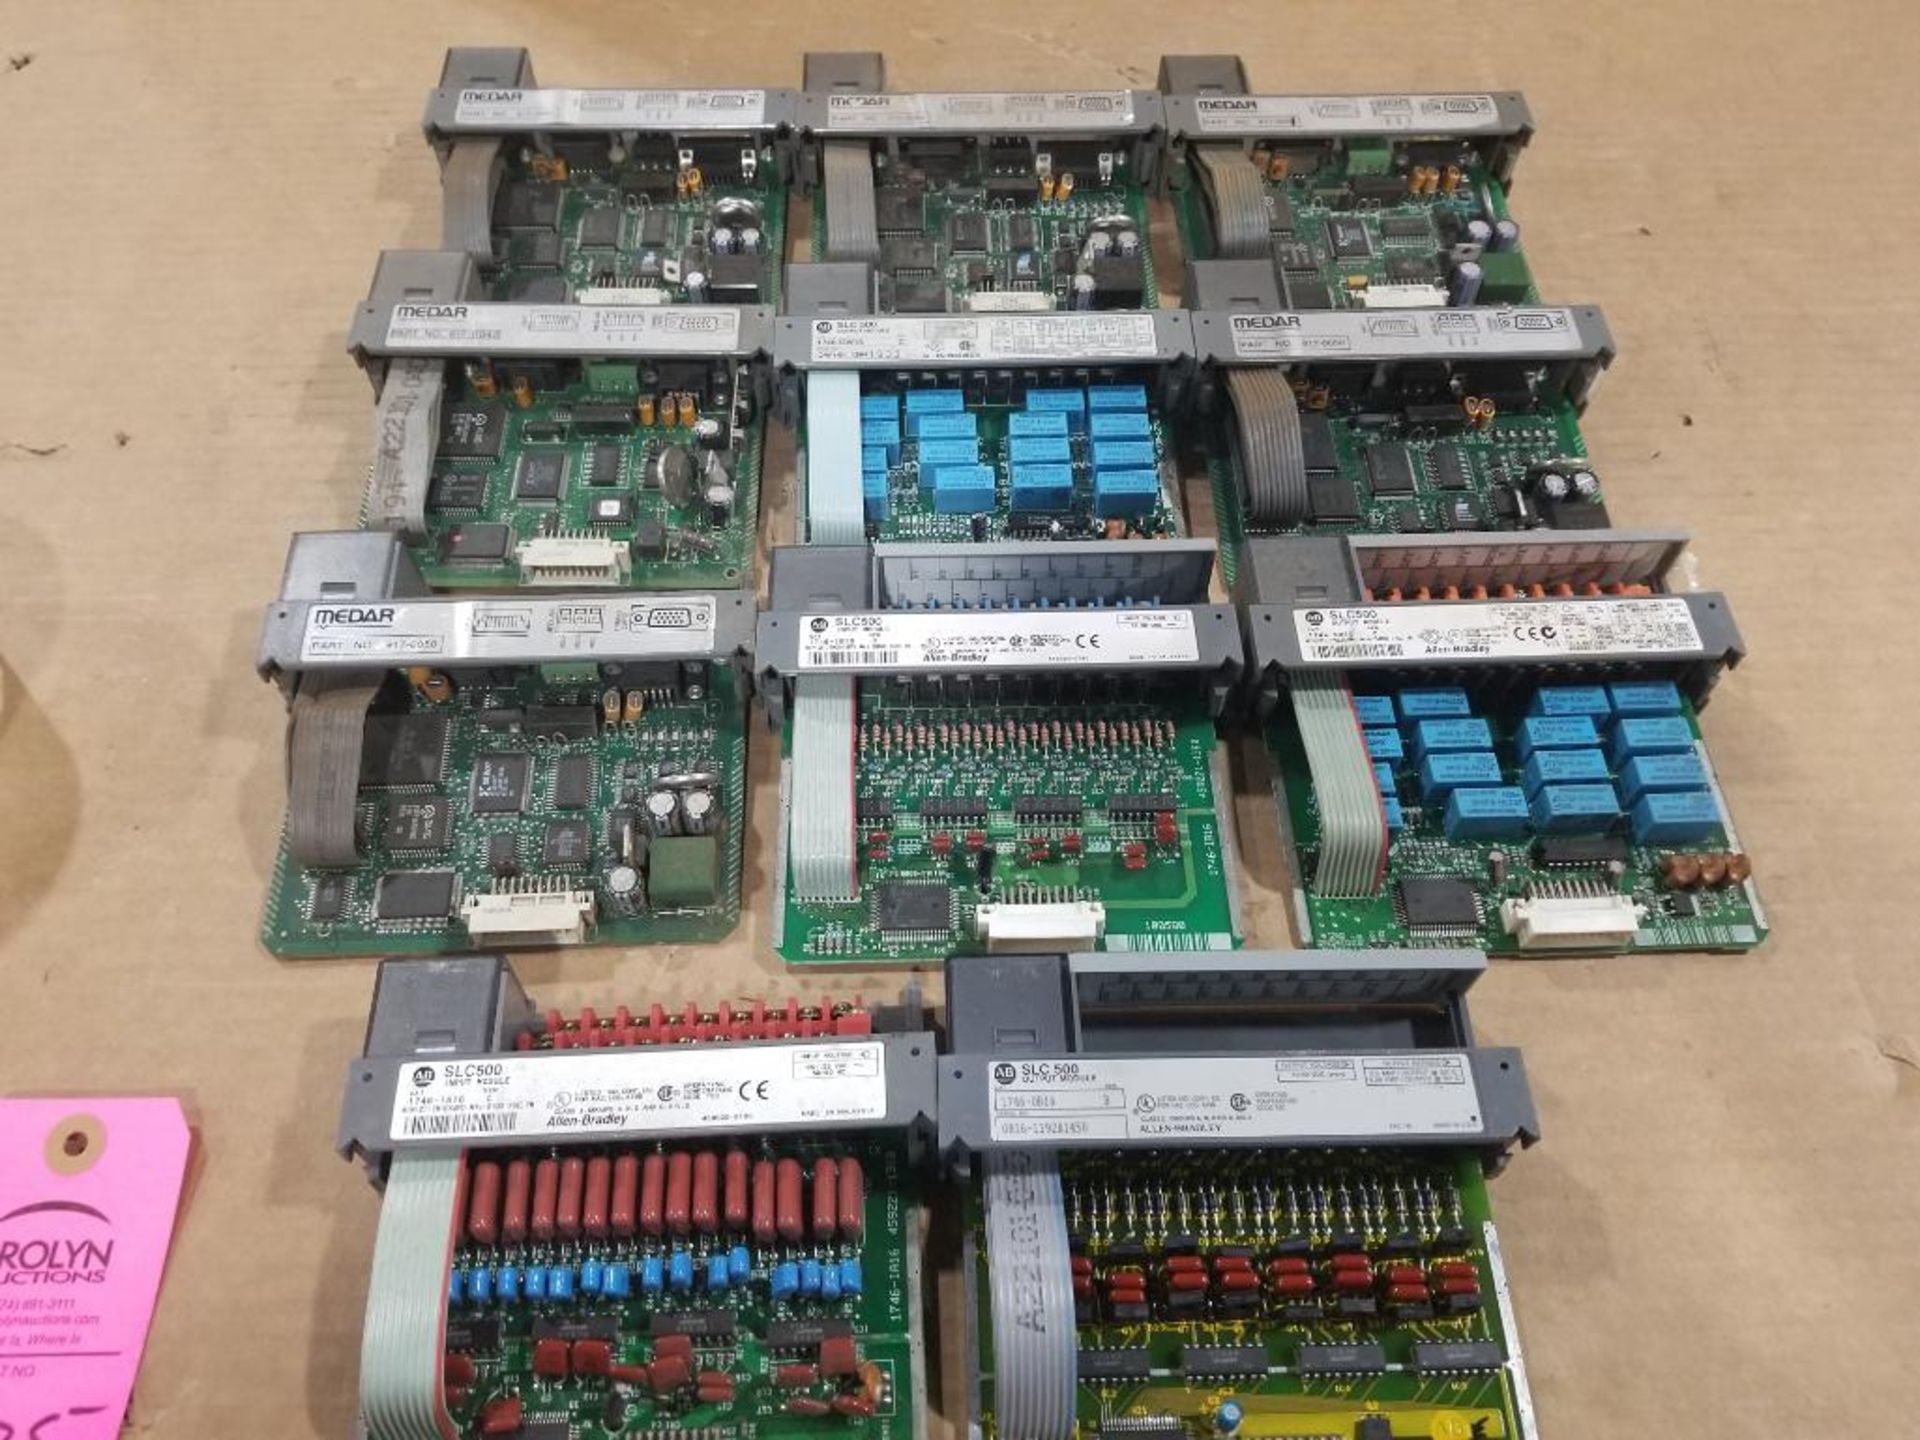 Large assortment of Allen Bradley PLC controls.